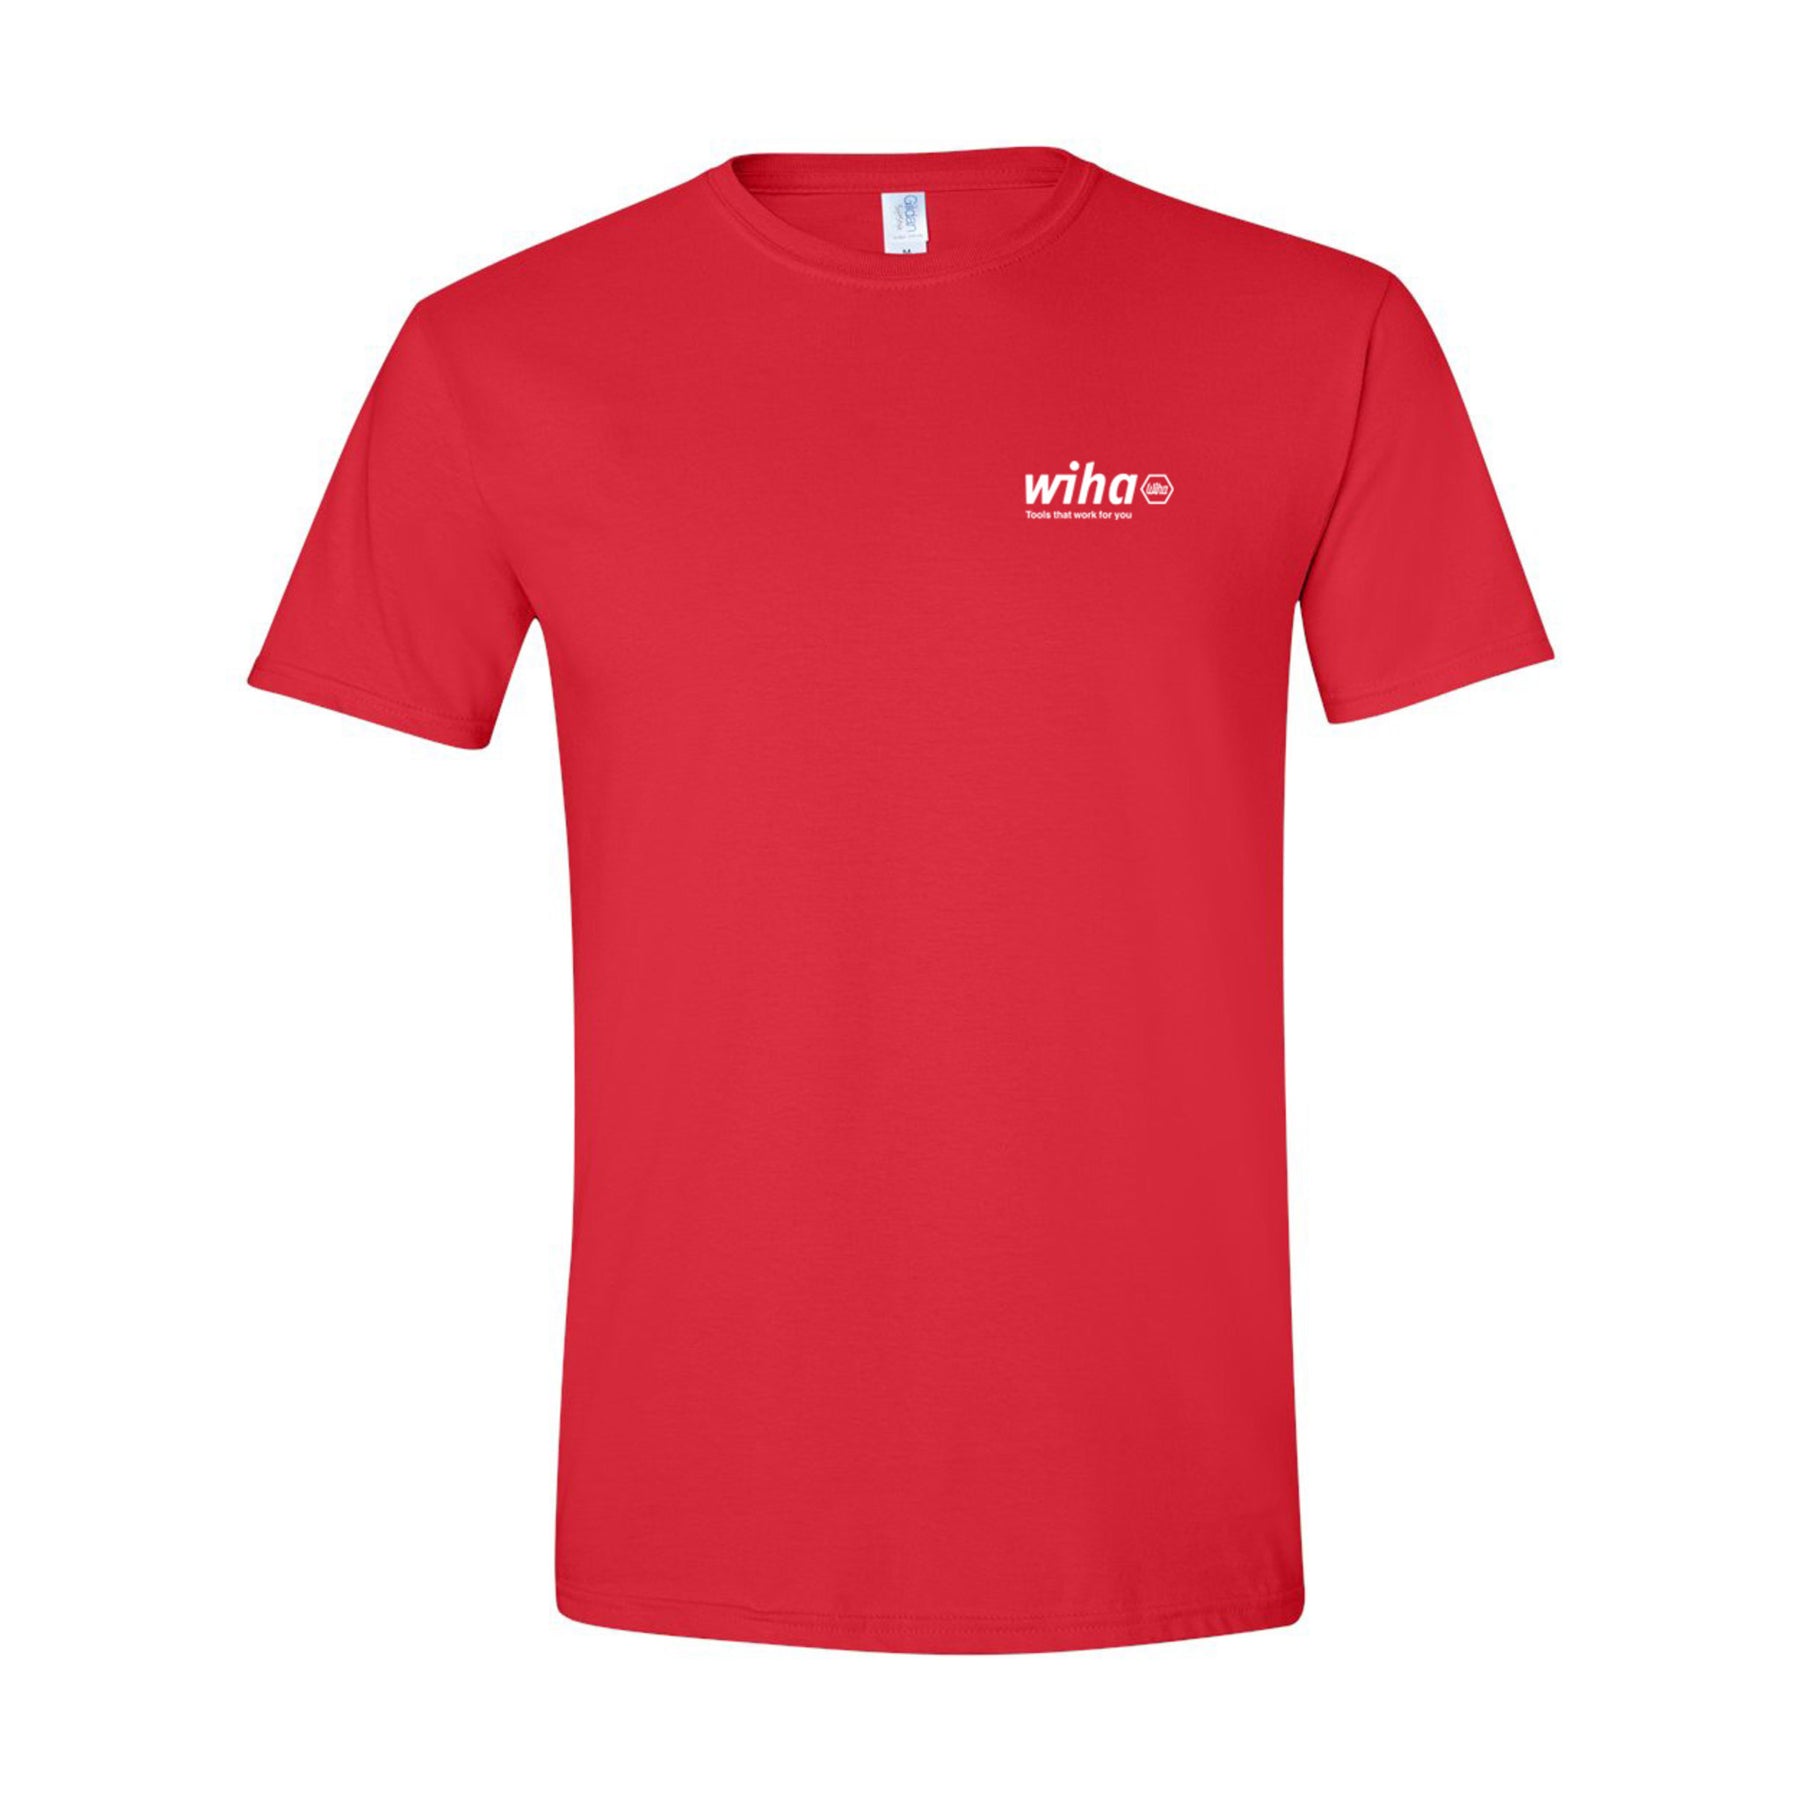 Wiha 91617 Wiha Men's T-shirt Red XXL